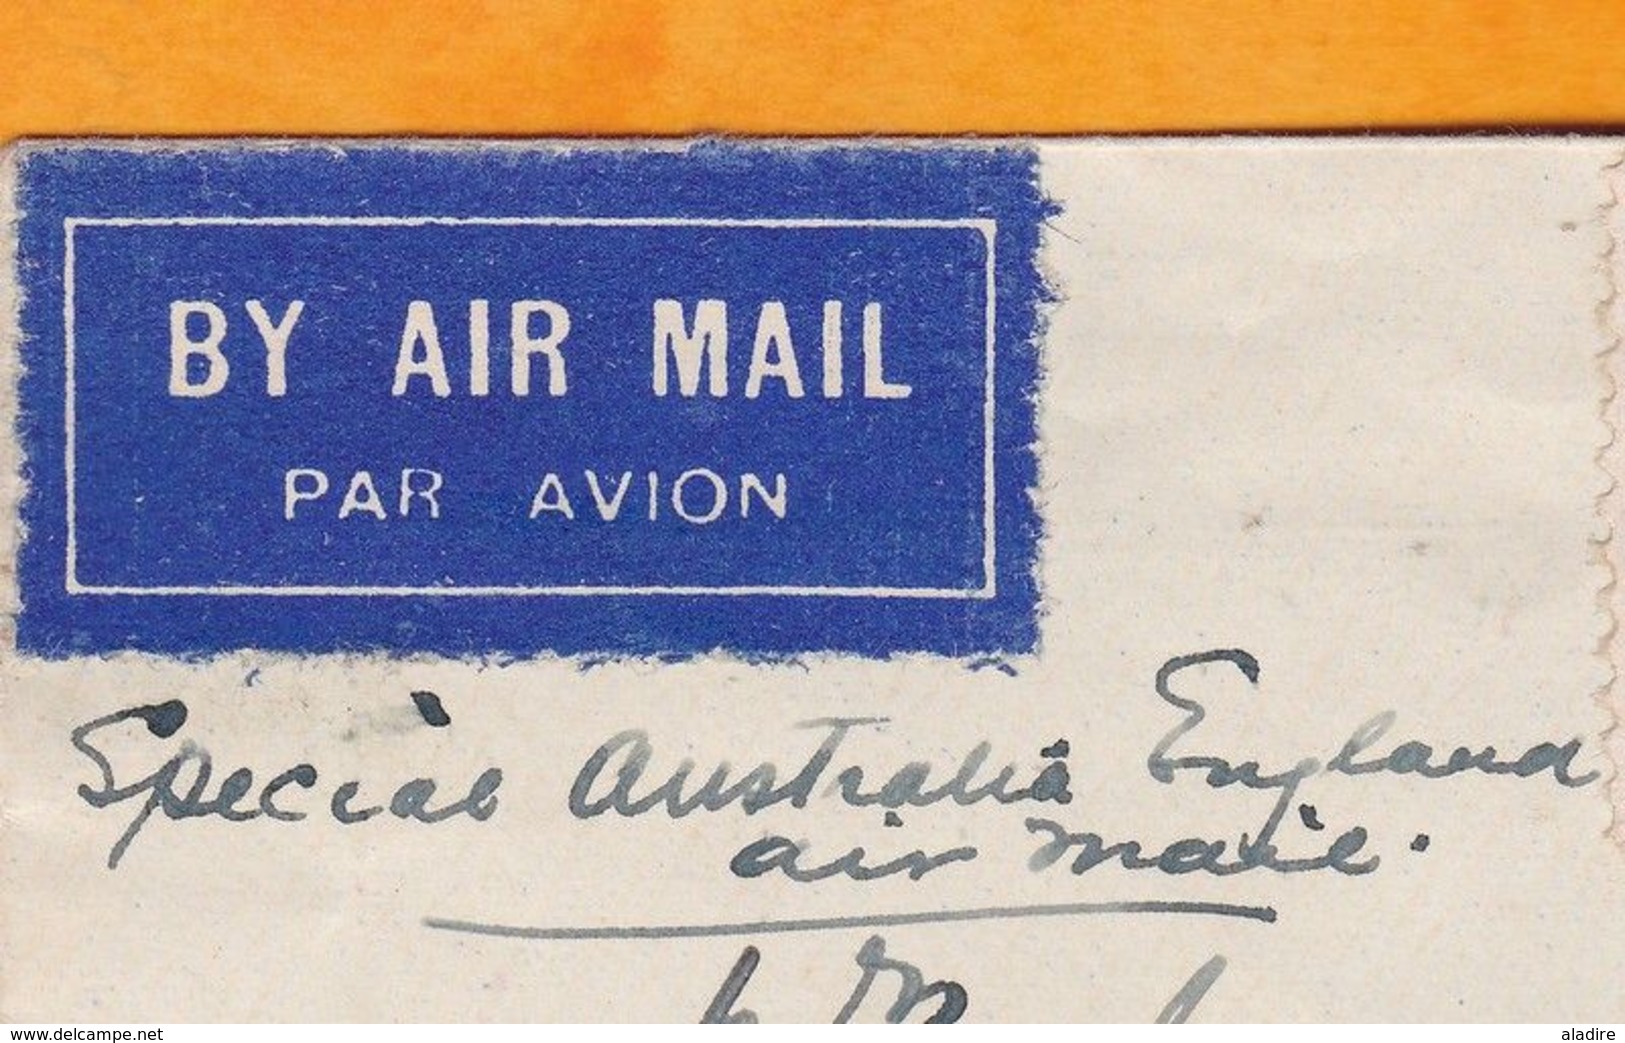 1931 - Enveloppe Par 1er Avion Spécial Noël Via Australia National Airways - Melbourne-Sydenham, England - Premiers Vols